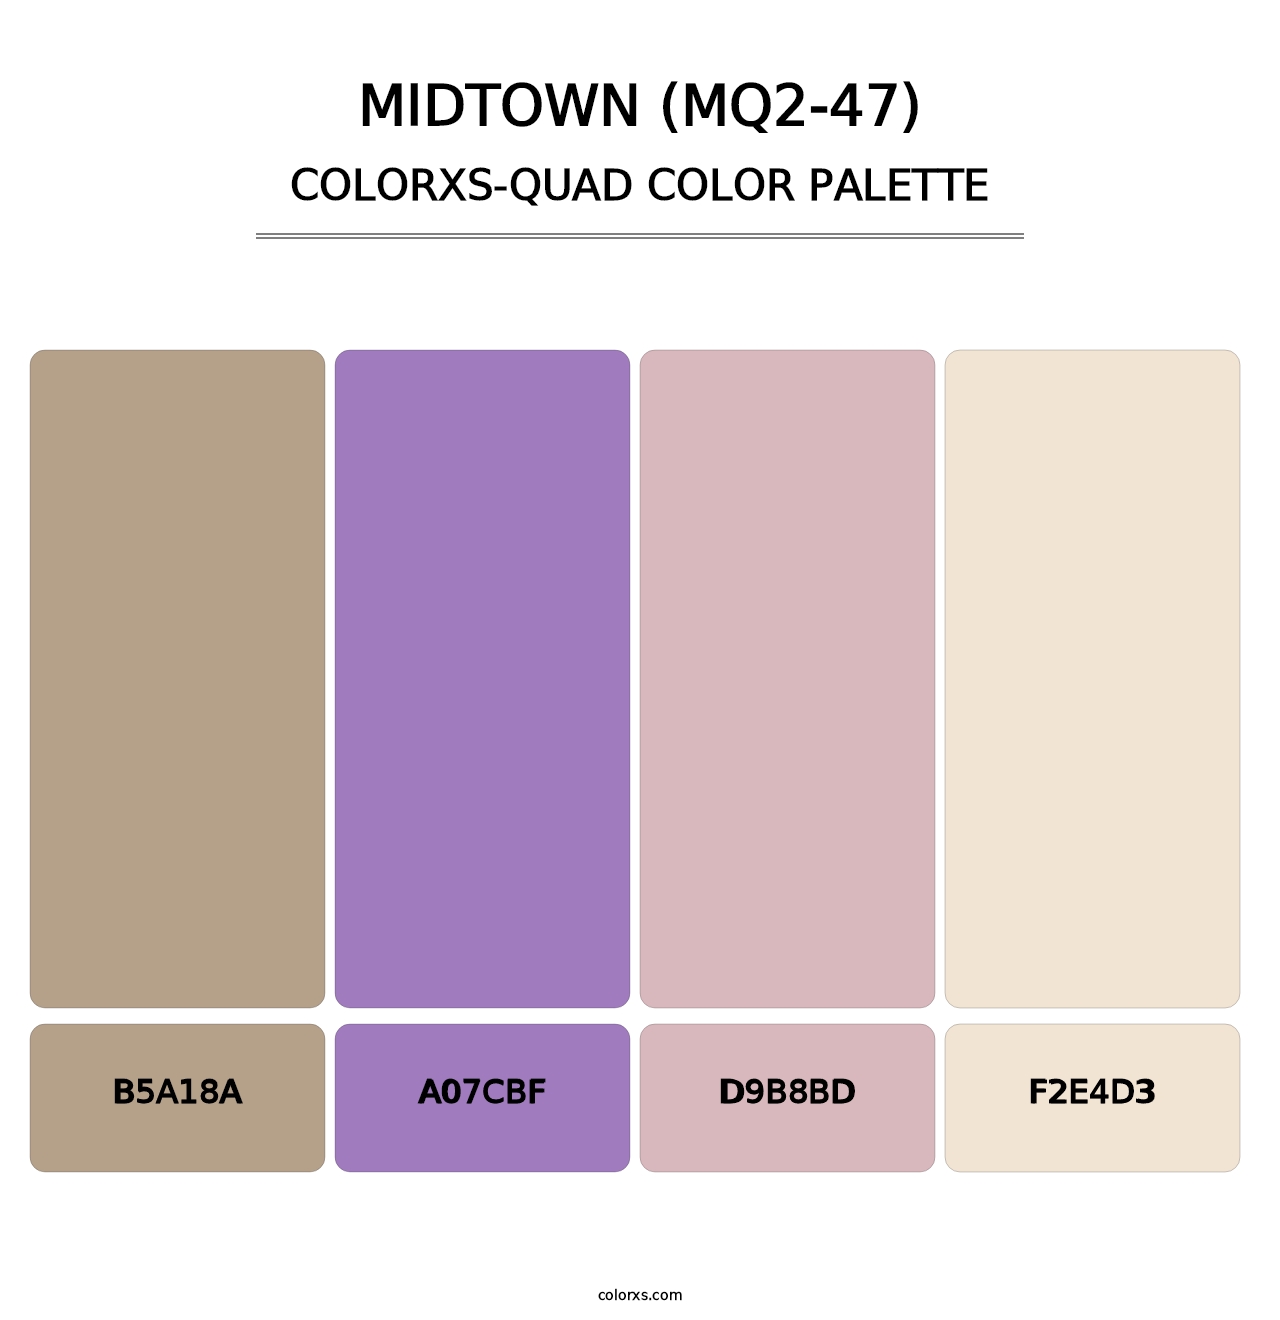 Midtown (MQ2-47) - Colorxs Quad Palette